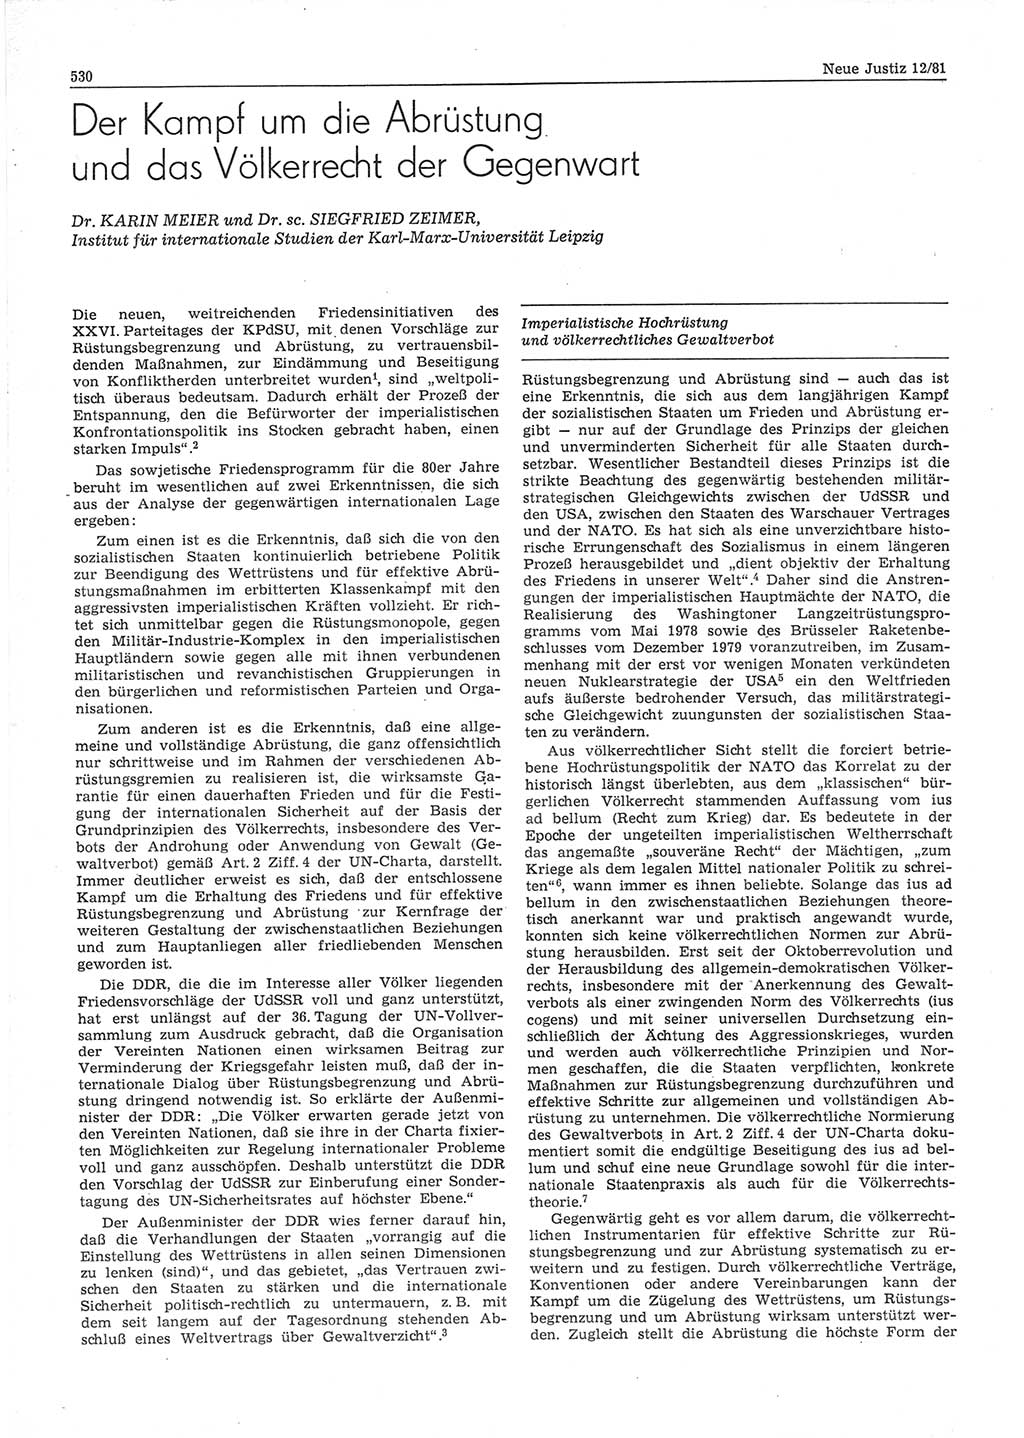 Neue Justiz (NJ), Zeitschrift für sozialistisches Recht und Gesetzlichkeit [Deutsche Demokratische Republik (DDR)], 35. Jahrgang 1981, Seite 530 (NJ DDR 1981, S. 530)